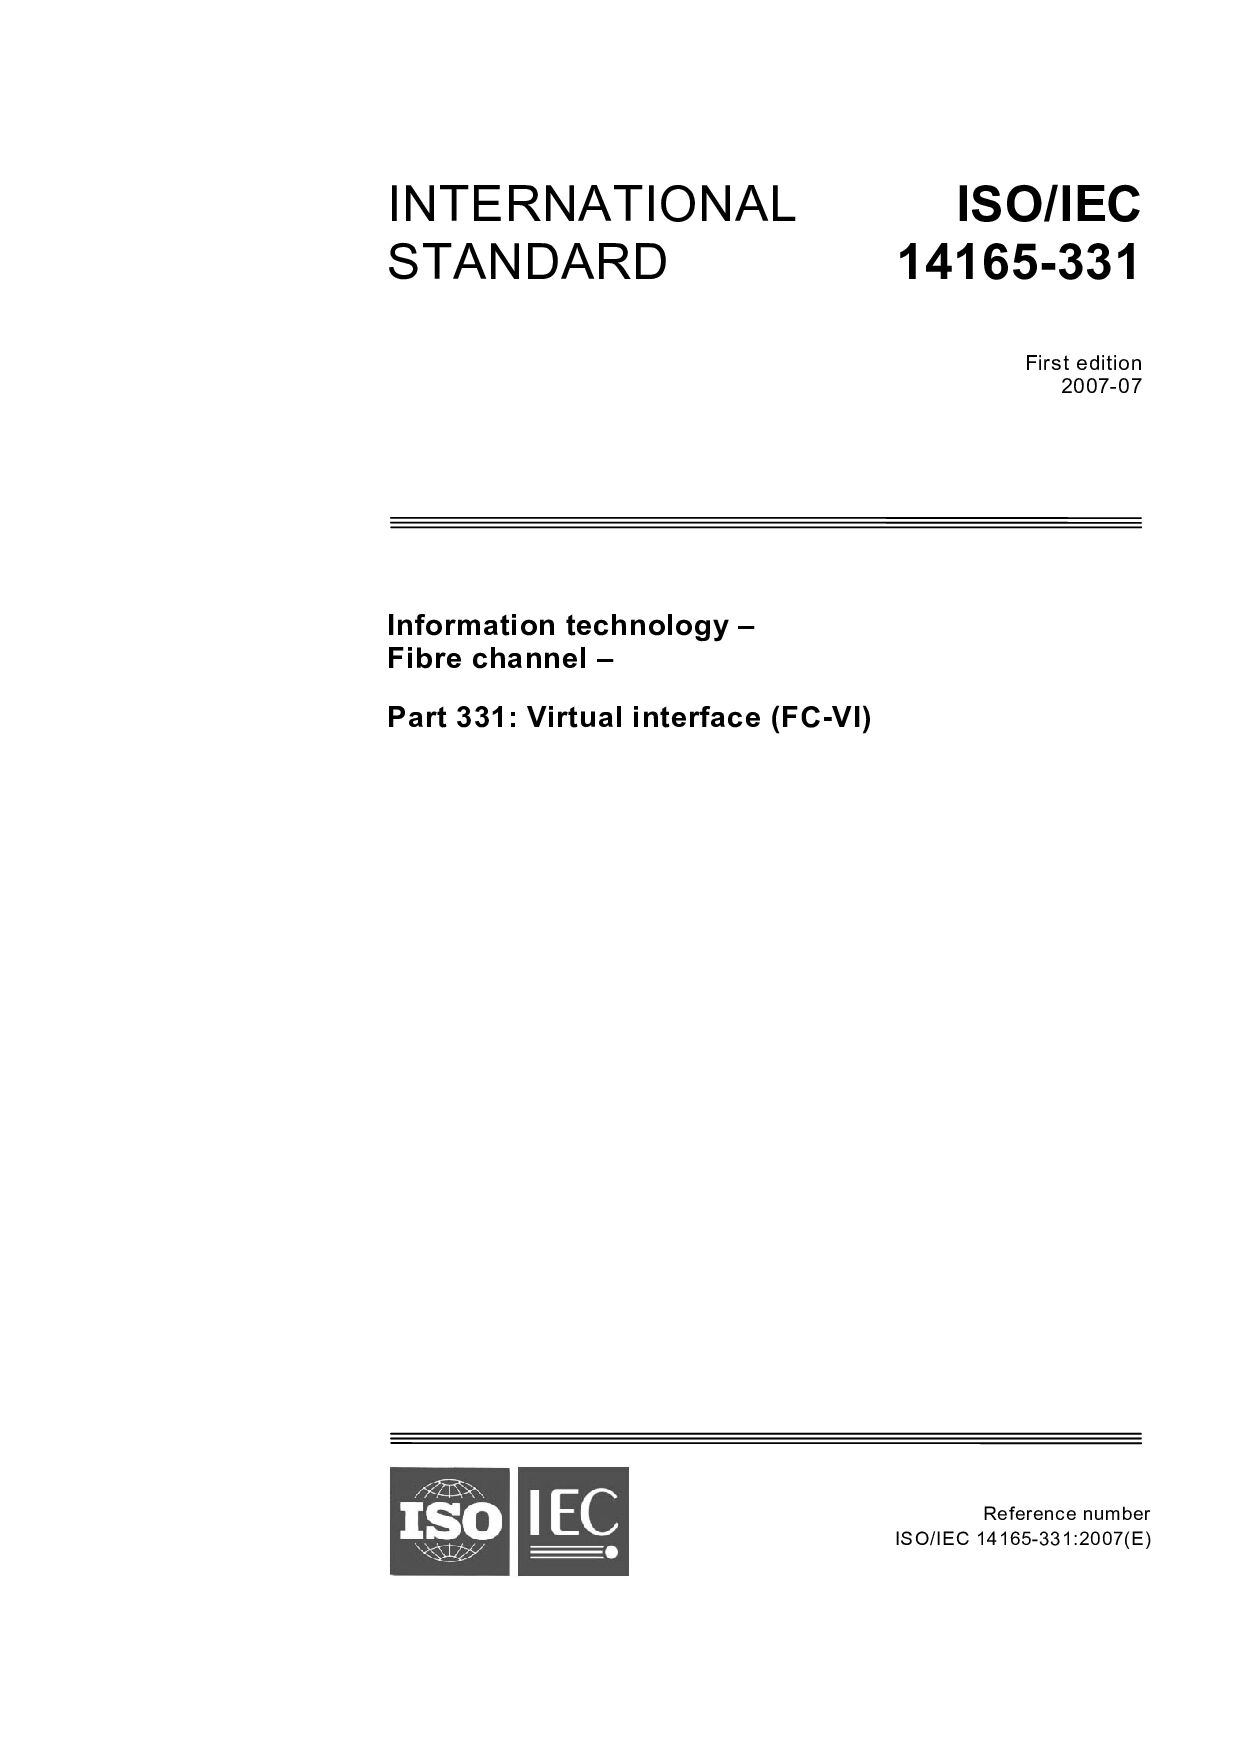 ISO/IEC 14165-331:2007封面图